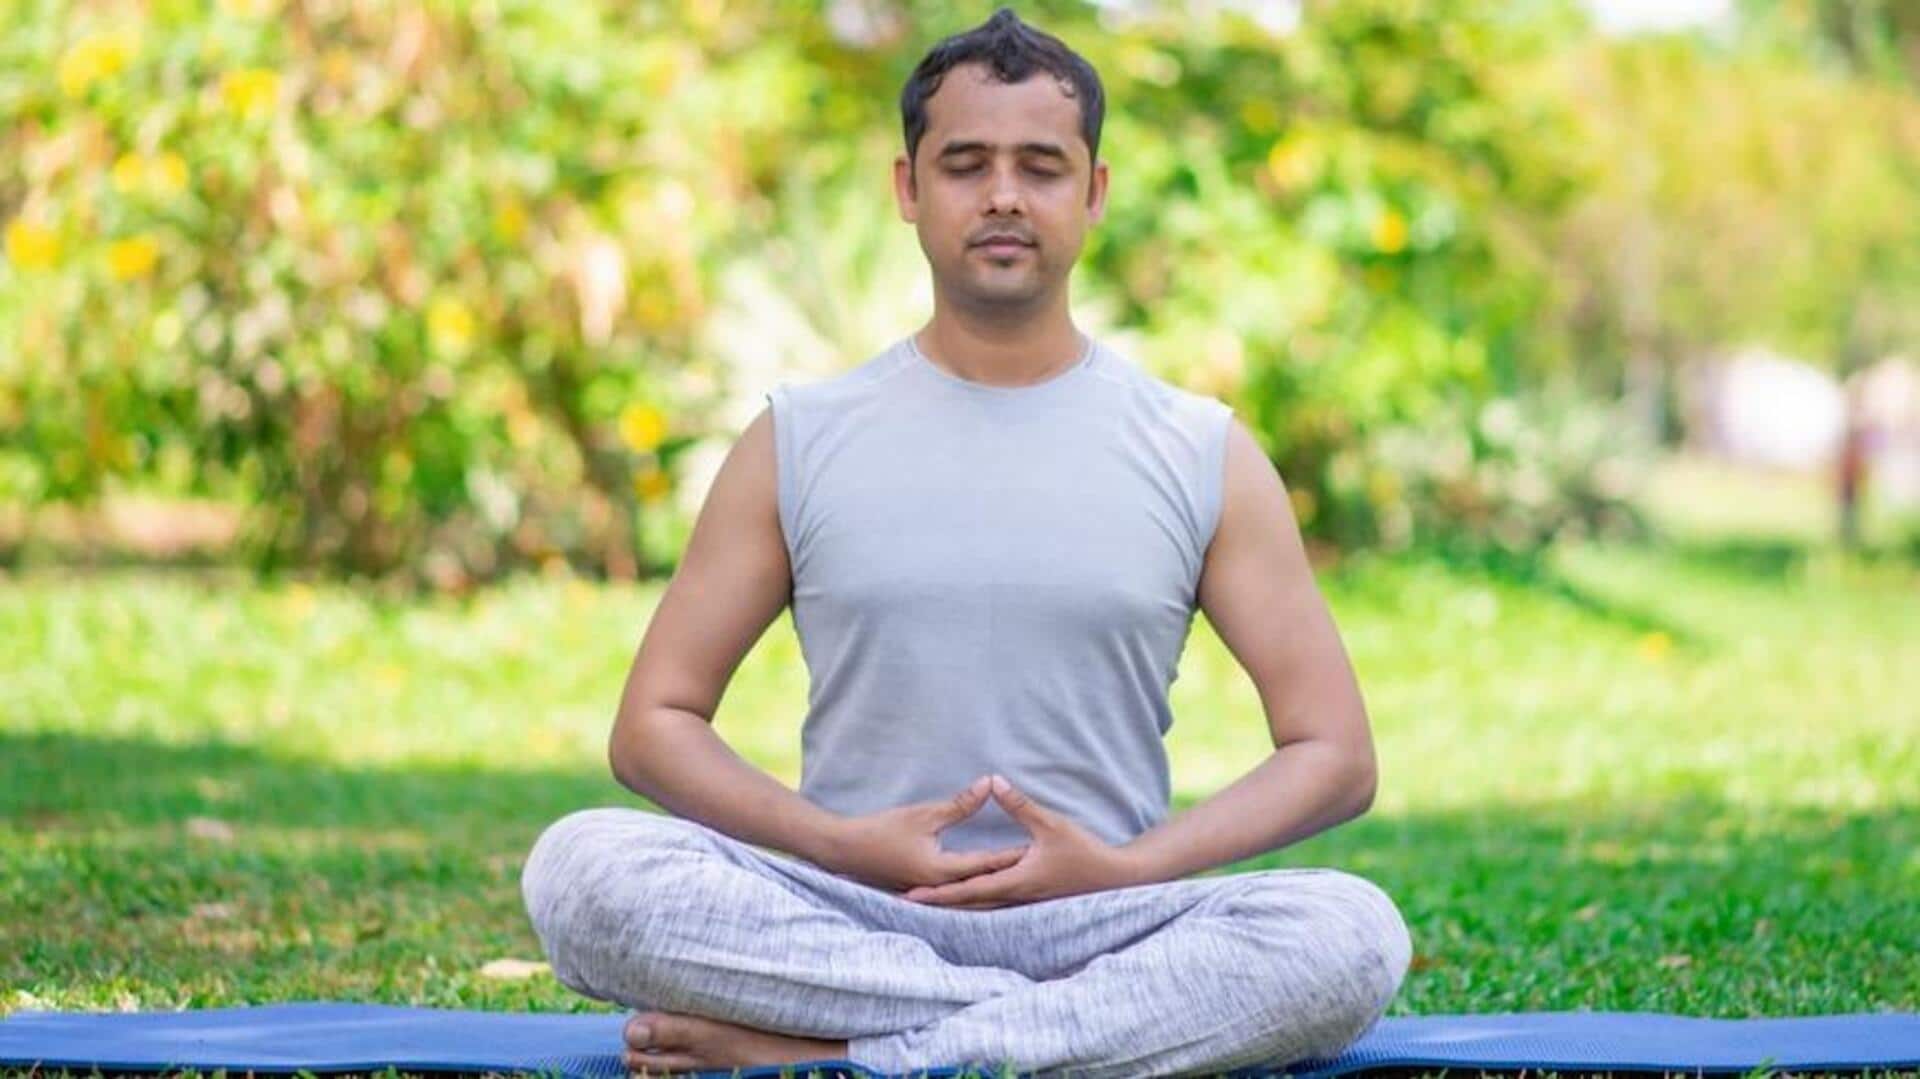 लीवर को स्वस्थ रखने में मदद कर सकते हैं ये 5 योगासन, ऐसे करें अभ्यास